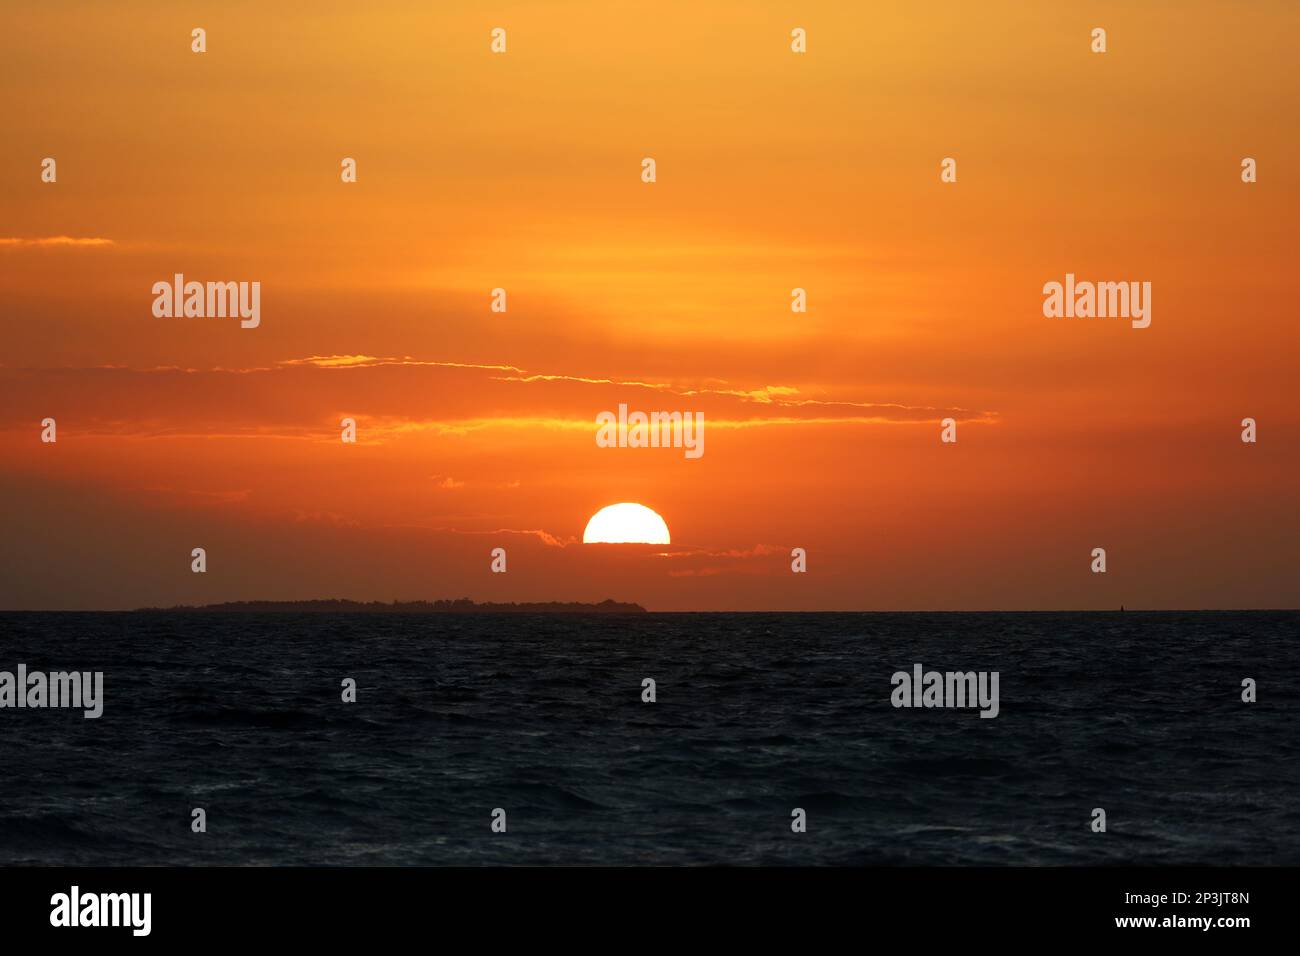 Lever du soleil sur une plage, le soleil orange brille à travers les nuages et se reflète dans les vagues sombres. Fond marin le matin pour un voyage romantique Banque D'Images